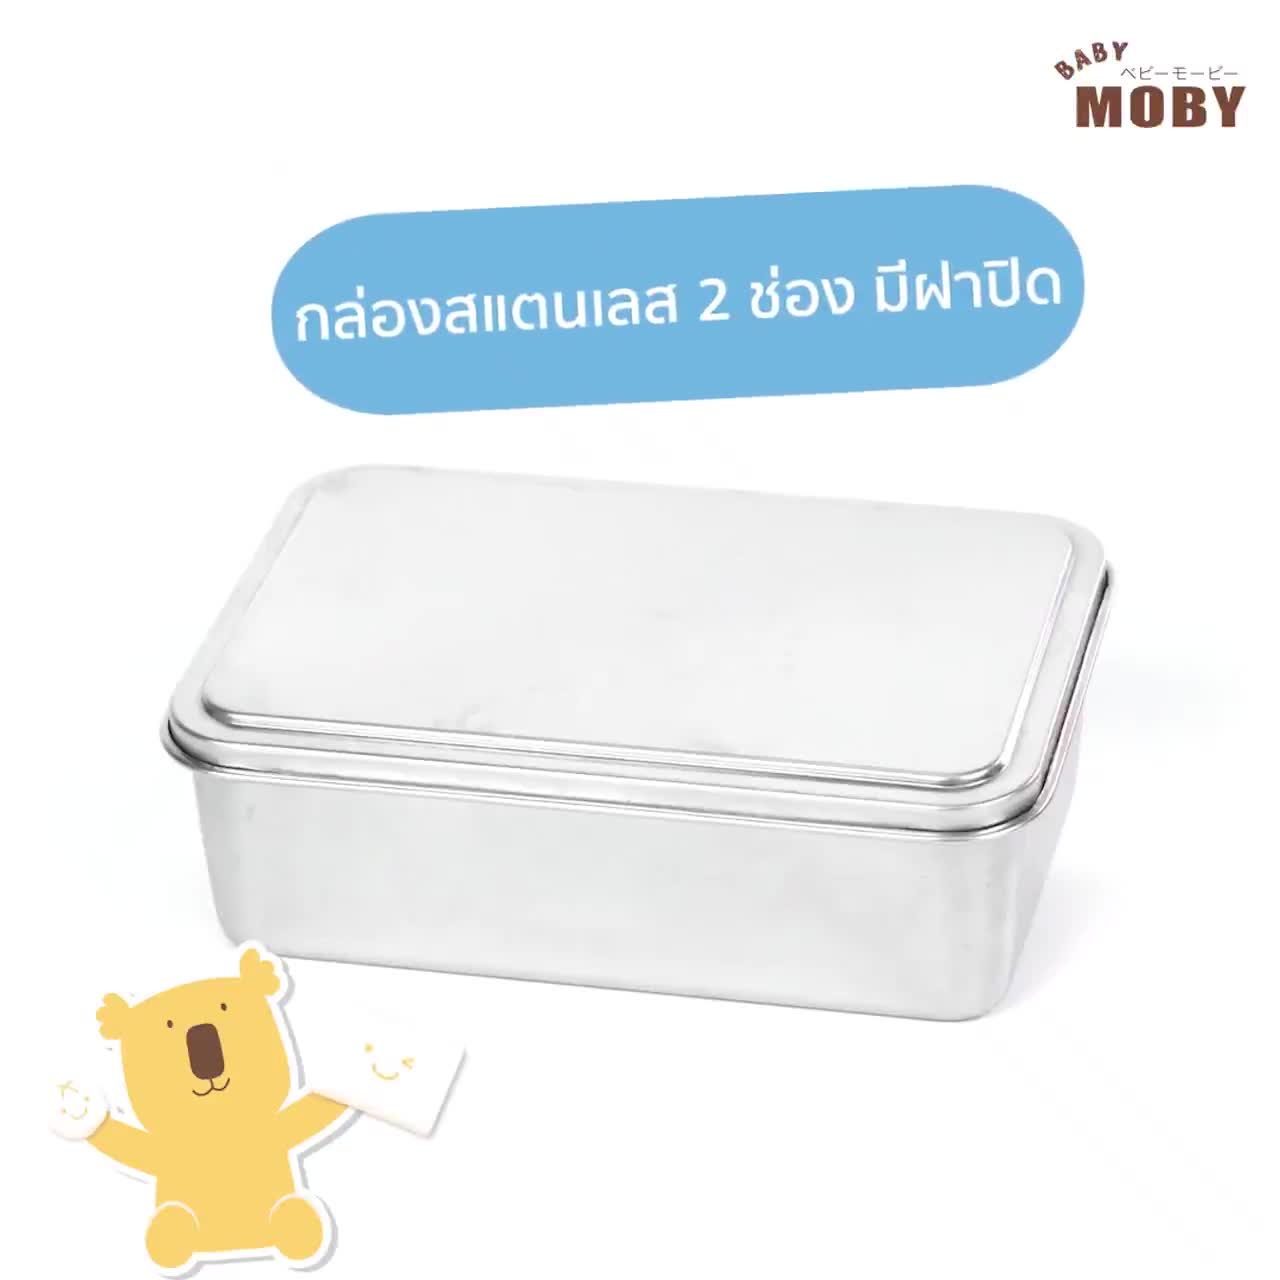 baby-moby-กล่องสแตนเลส-2-ช่อง-สำหรับใส่สำลี-stl-304